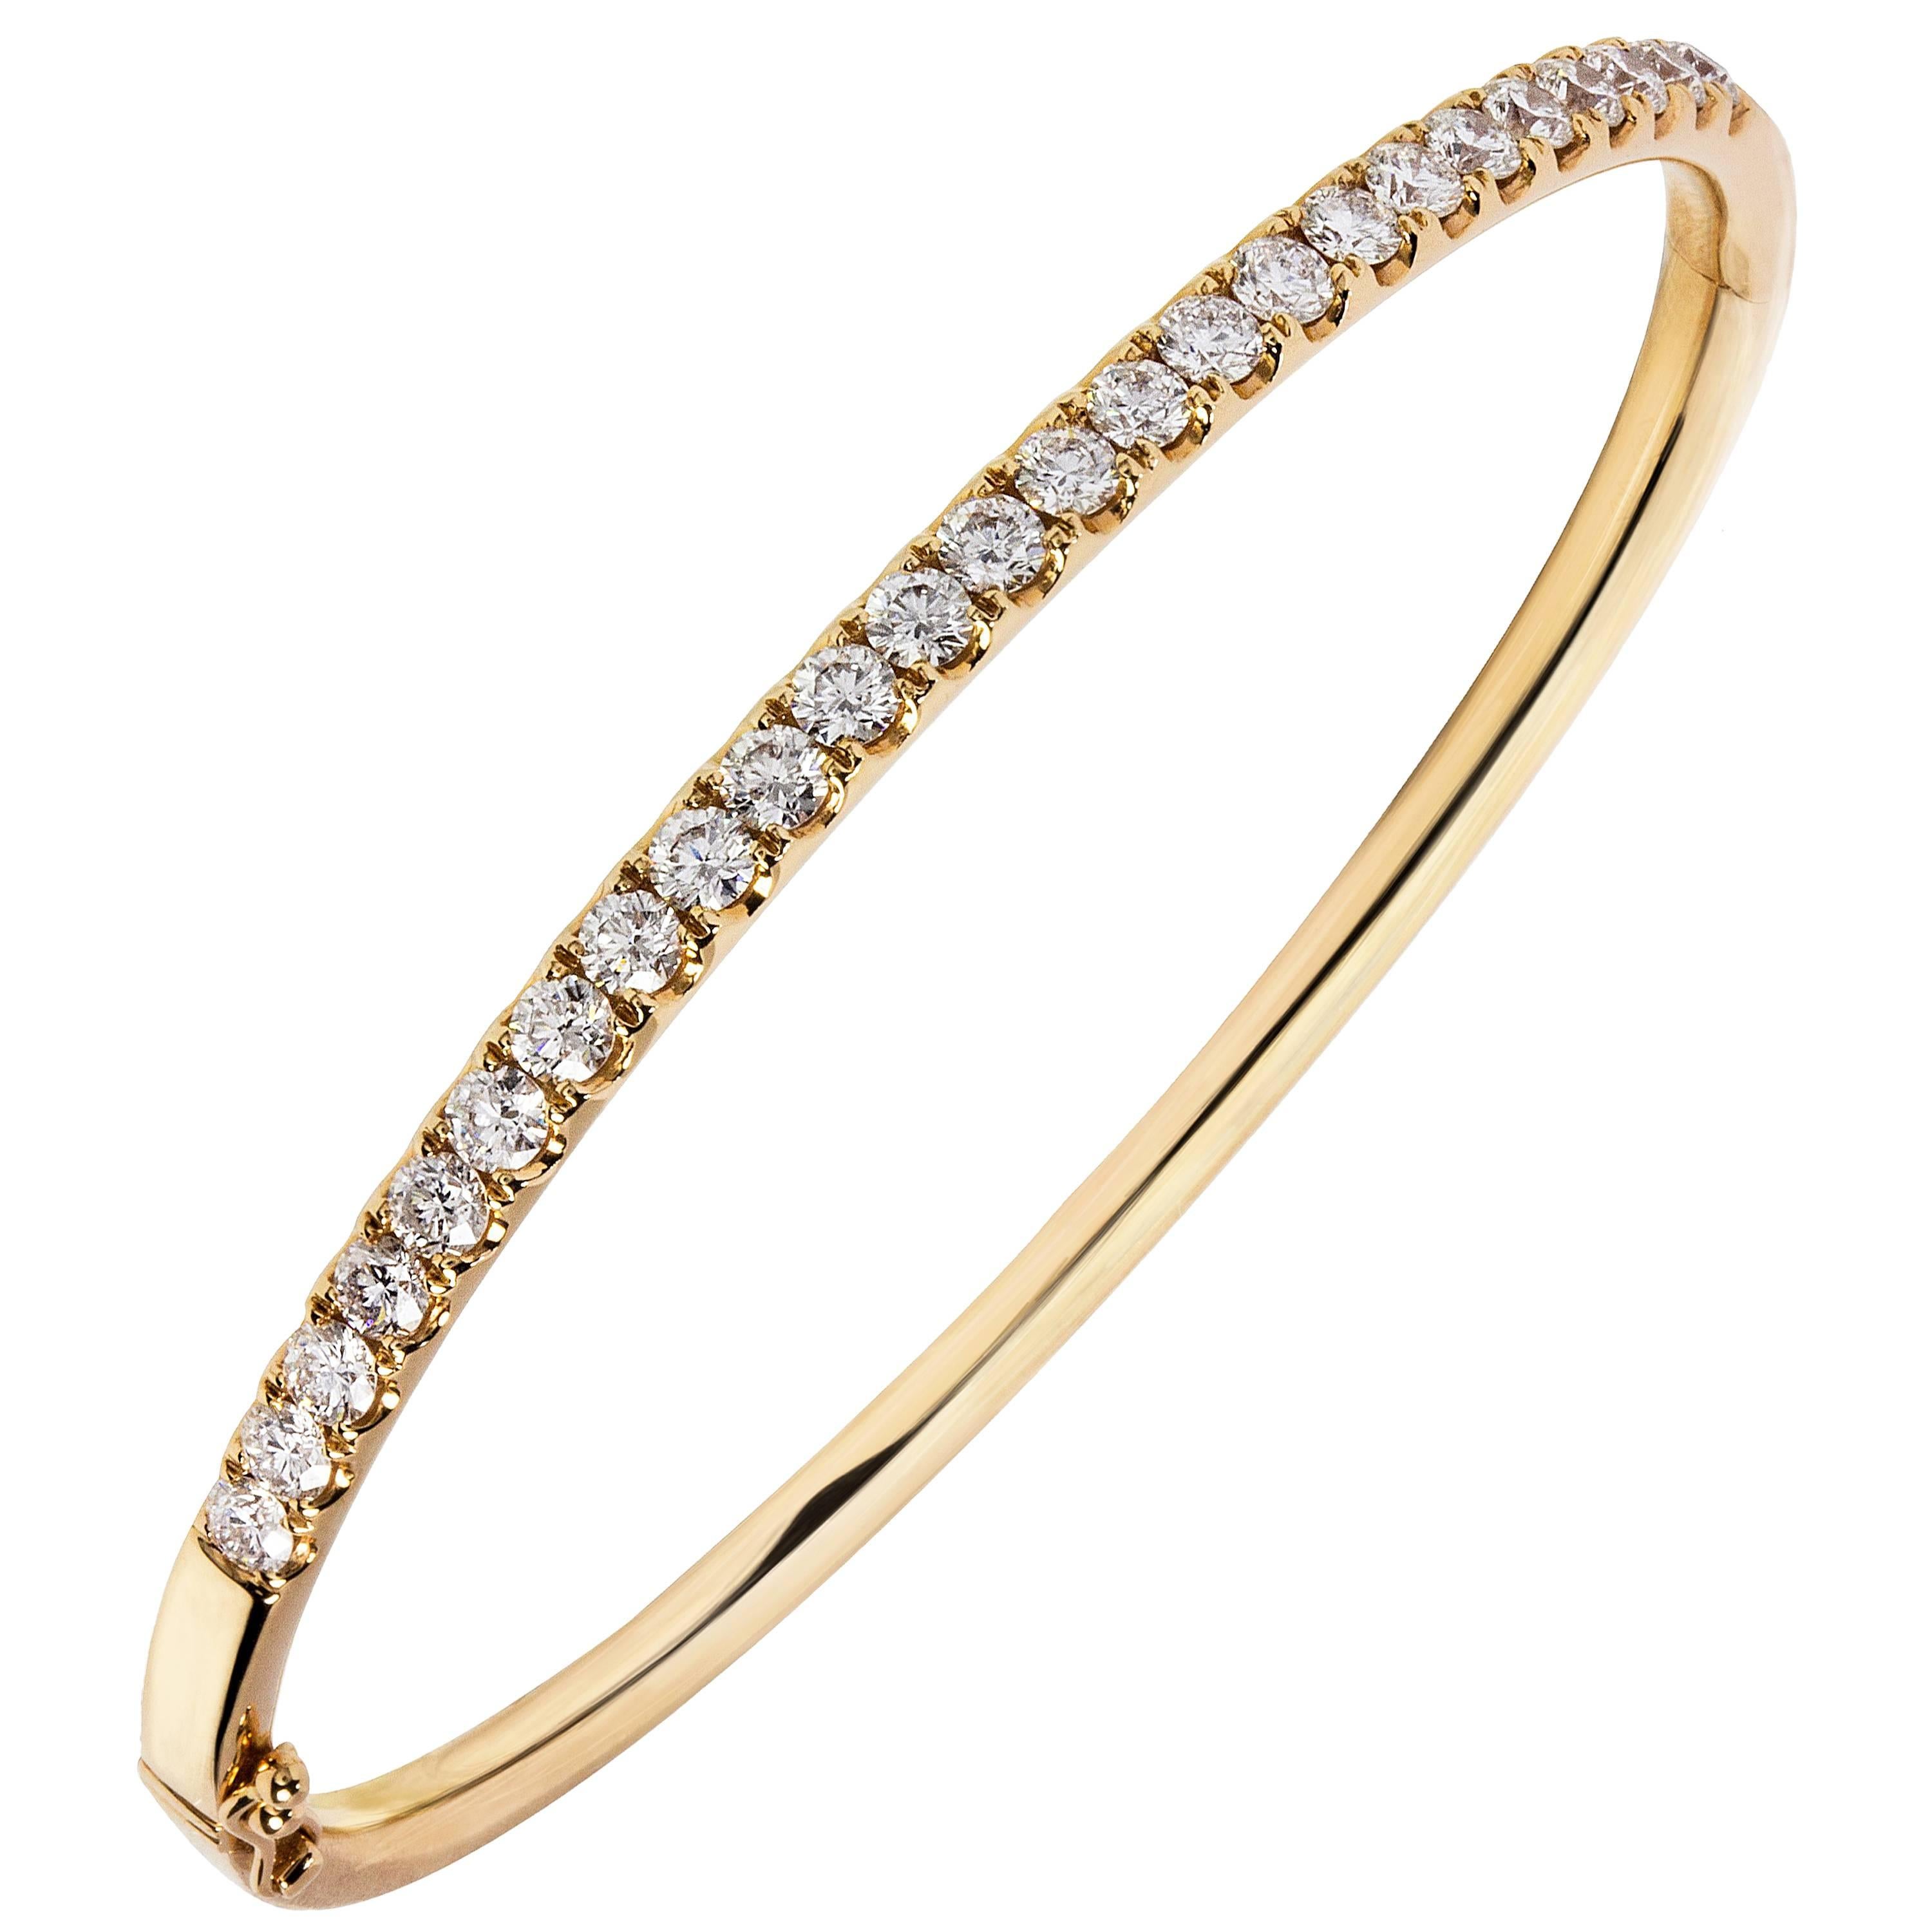 2.05 Carat Diamond Bangle Bracelet in 18 Karat Rose Gold